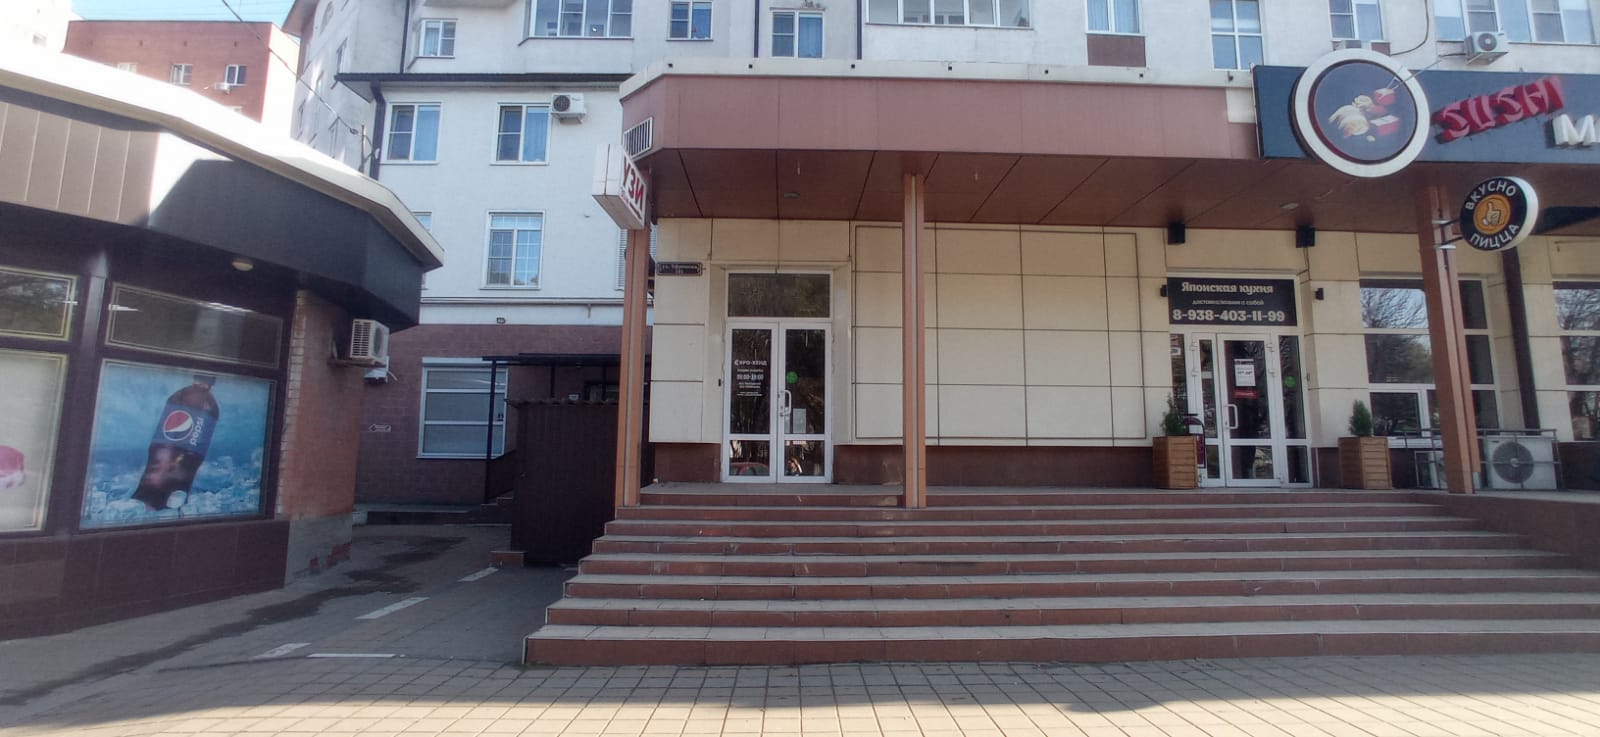 Предлагаем к аренде торговое помещение площадью 170 м², на 1ом этаже по ул. Ефремова д.101, напрямую от собственника._0